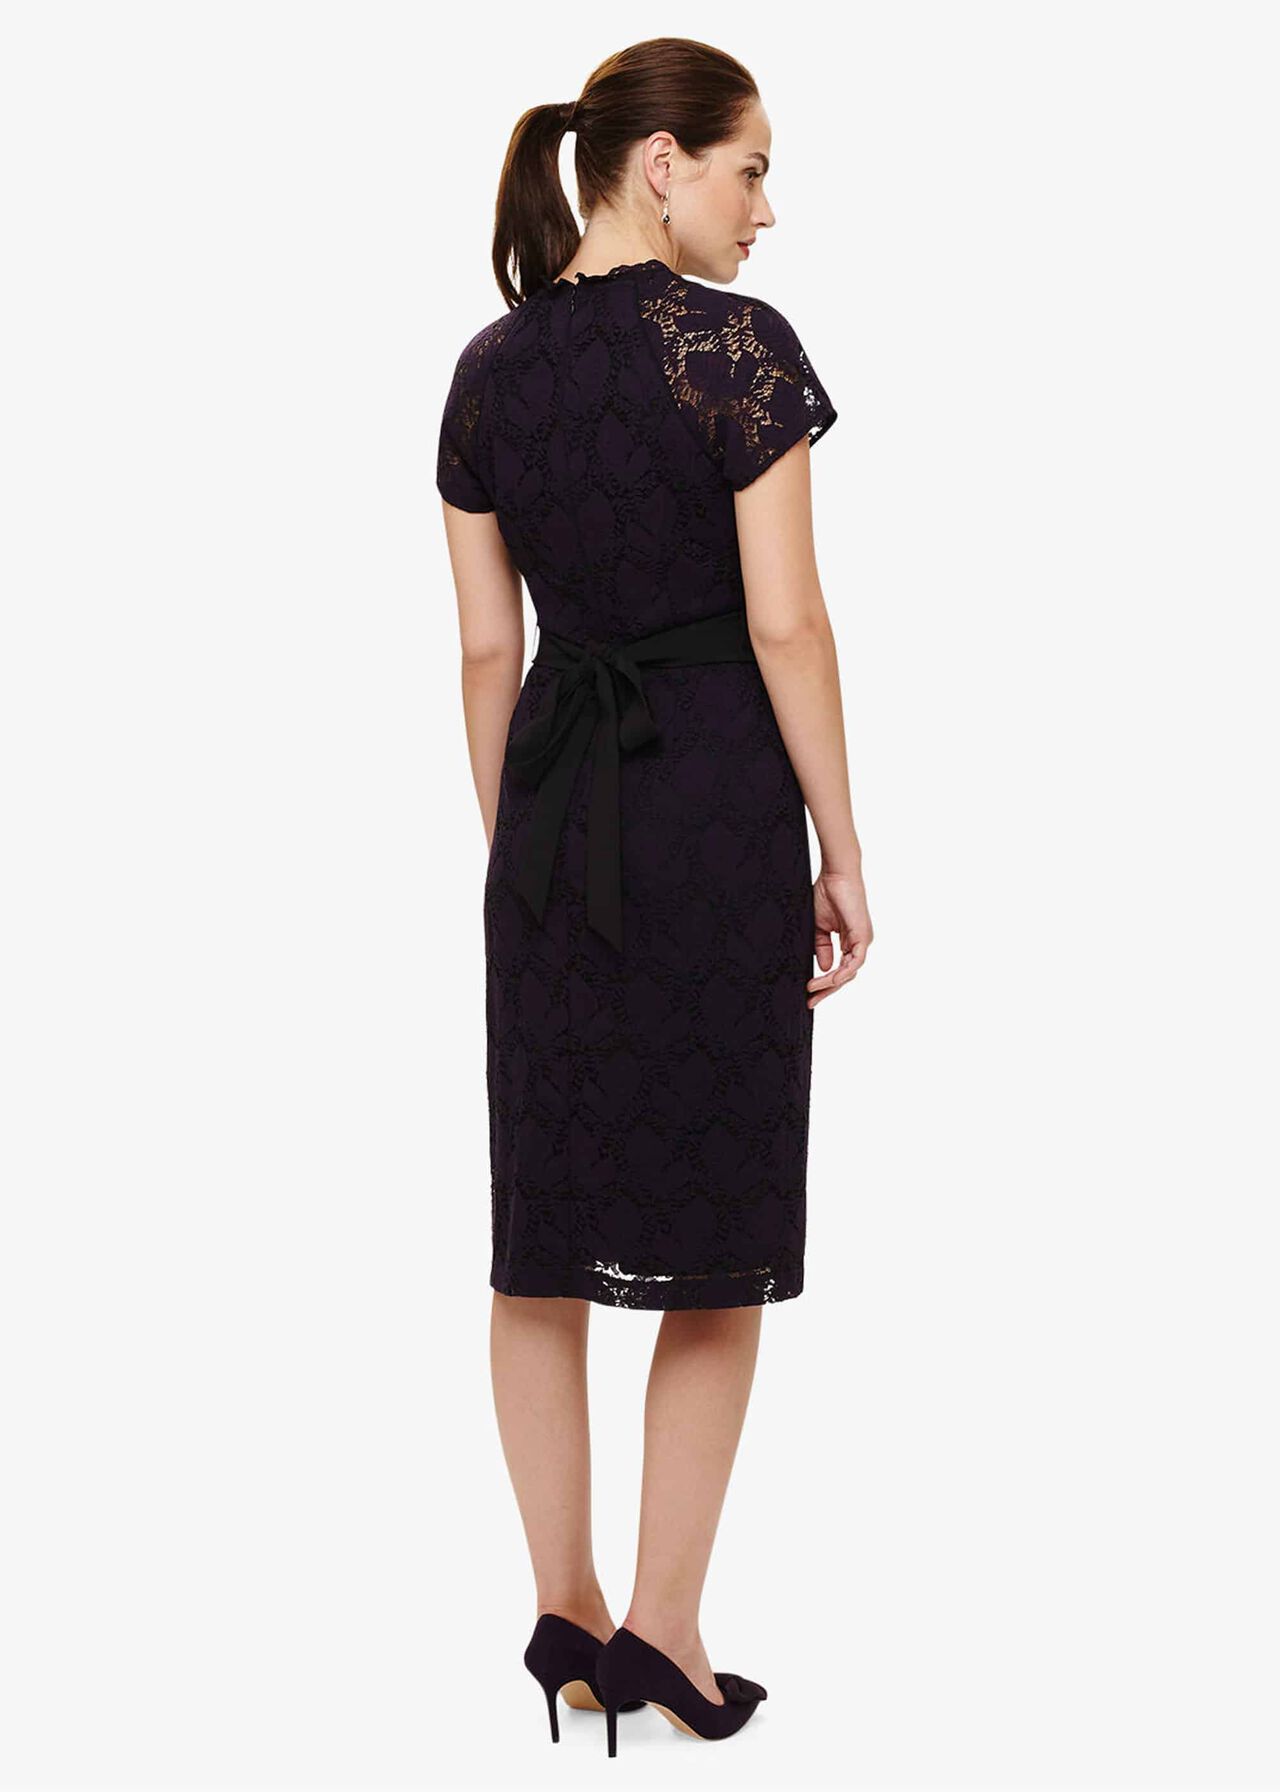 Henrietta Lace Dress